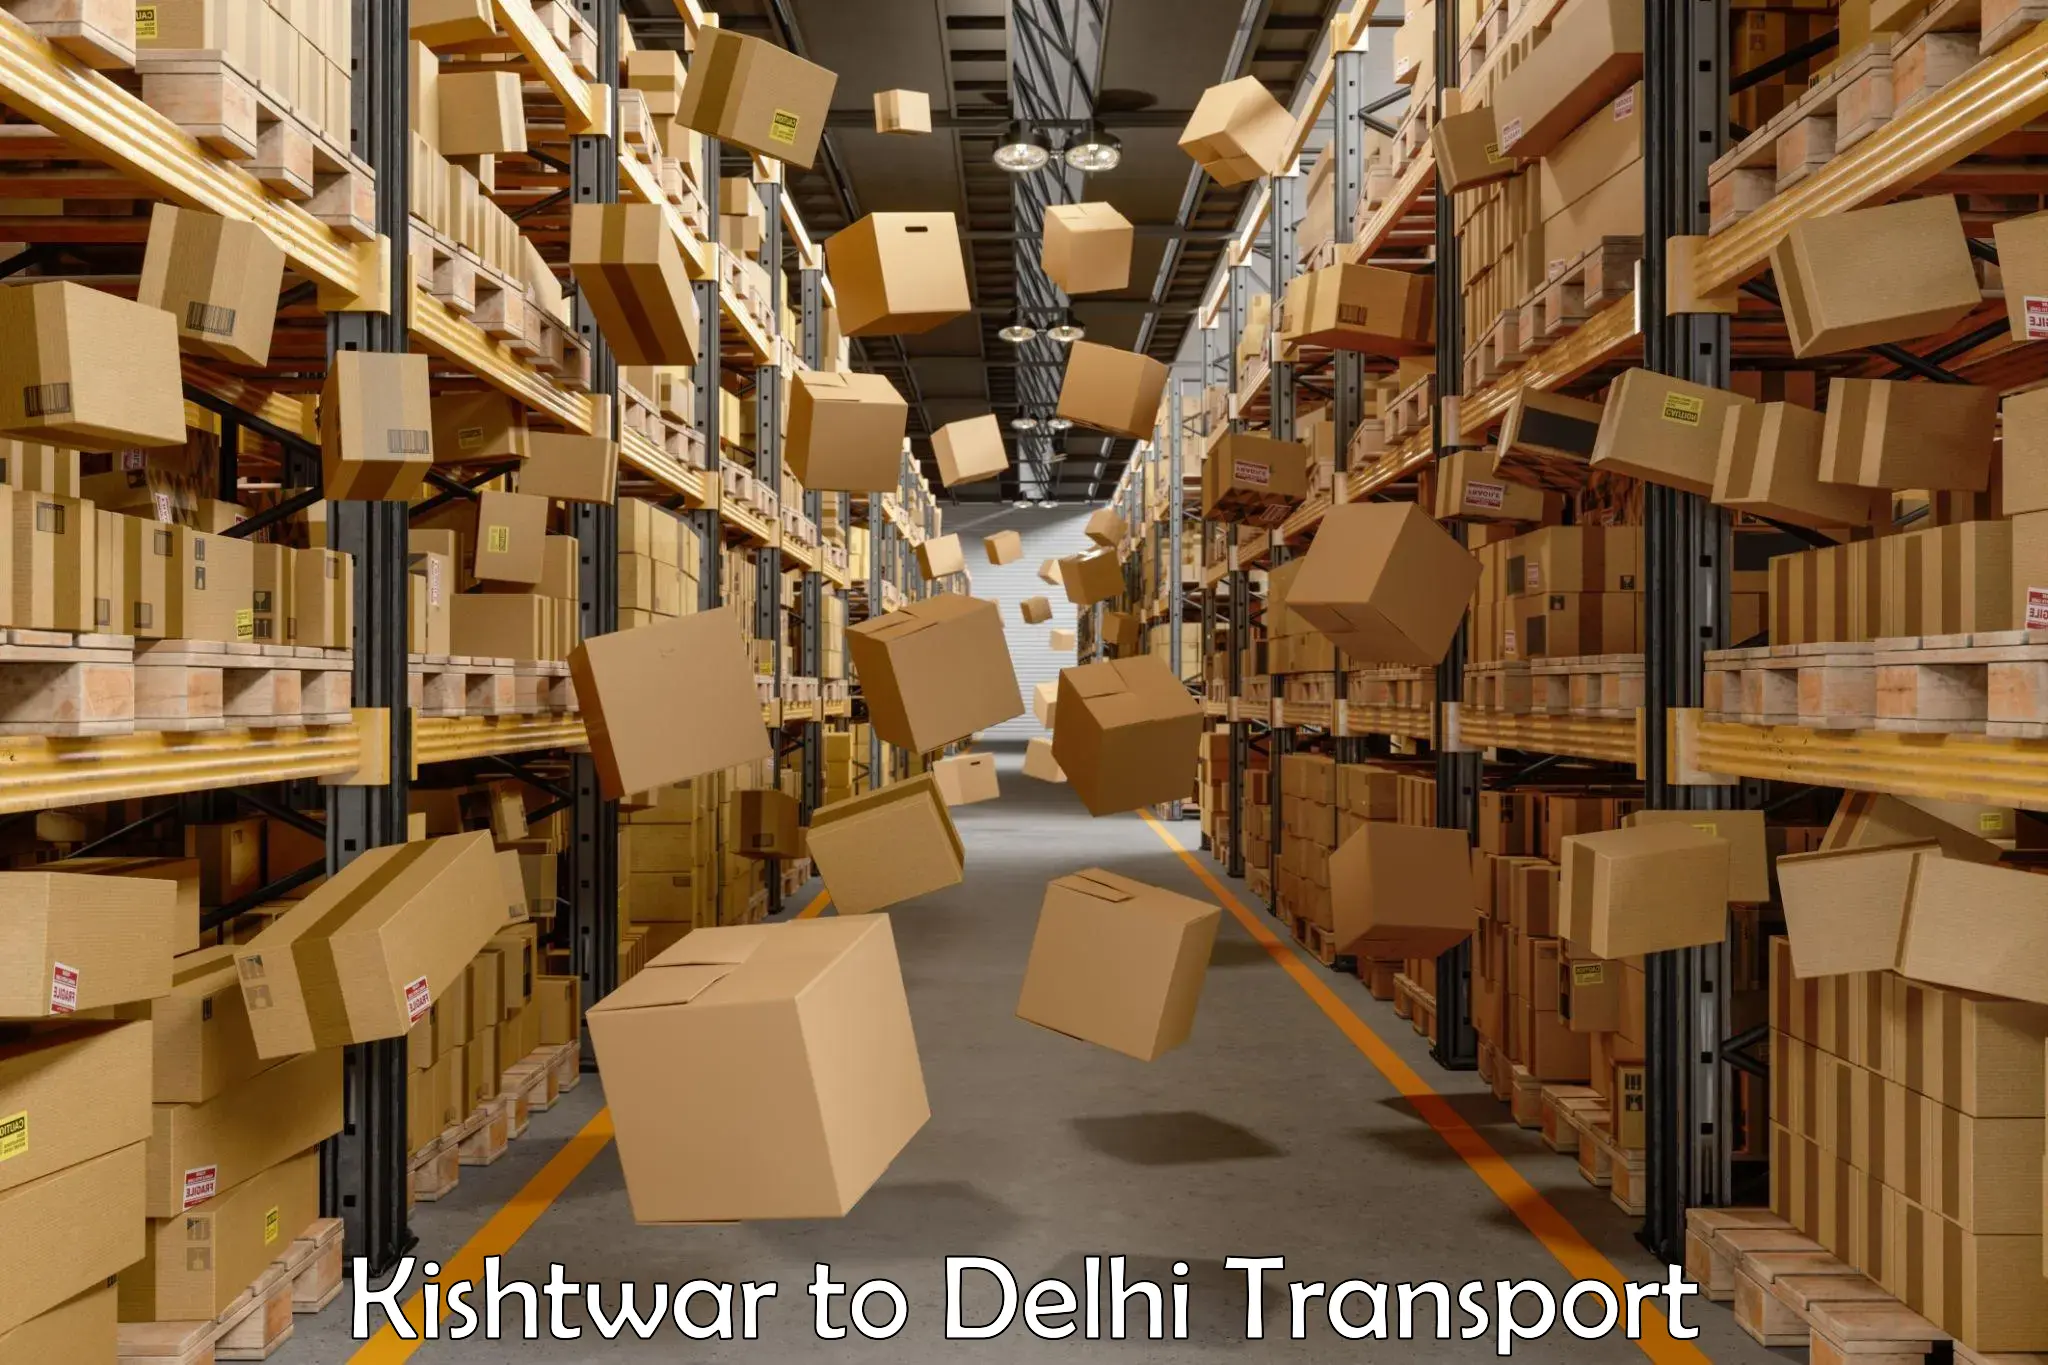 Container transport service Kishtwar to Kalkaji